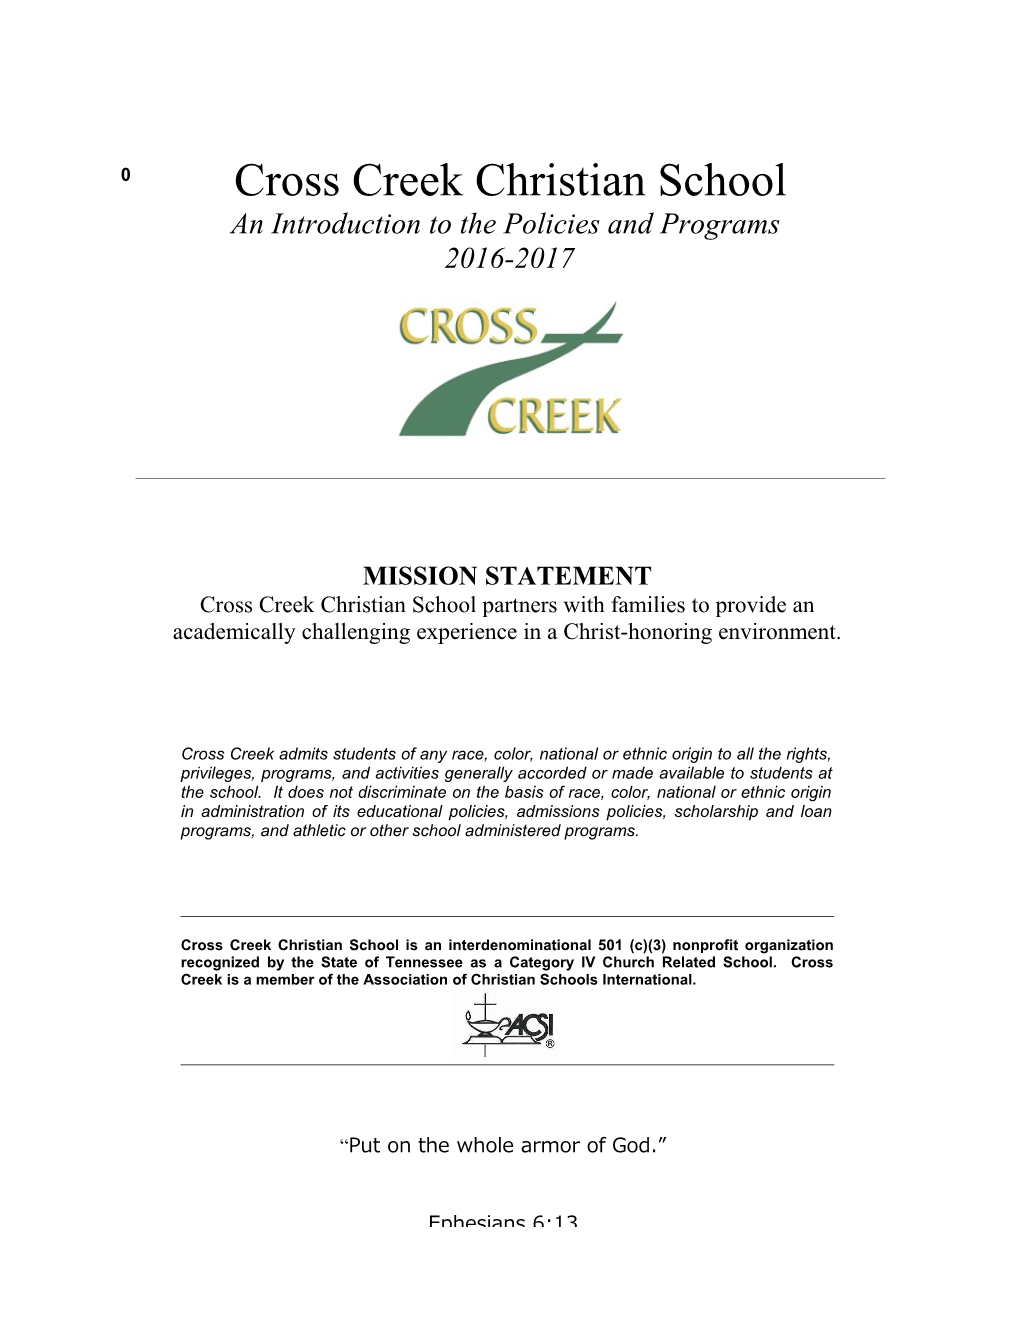 From Cross Creek S Board of Directors